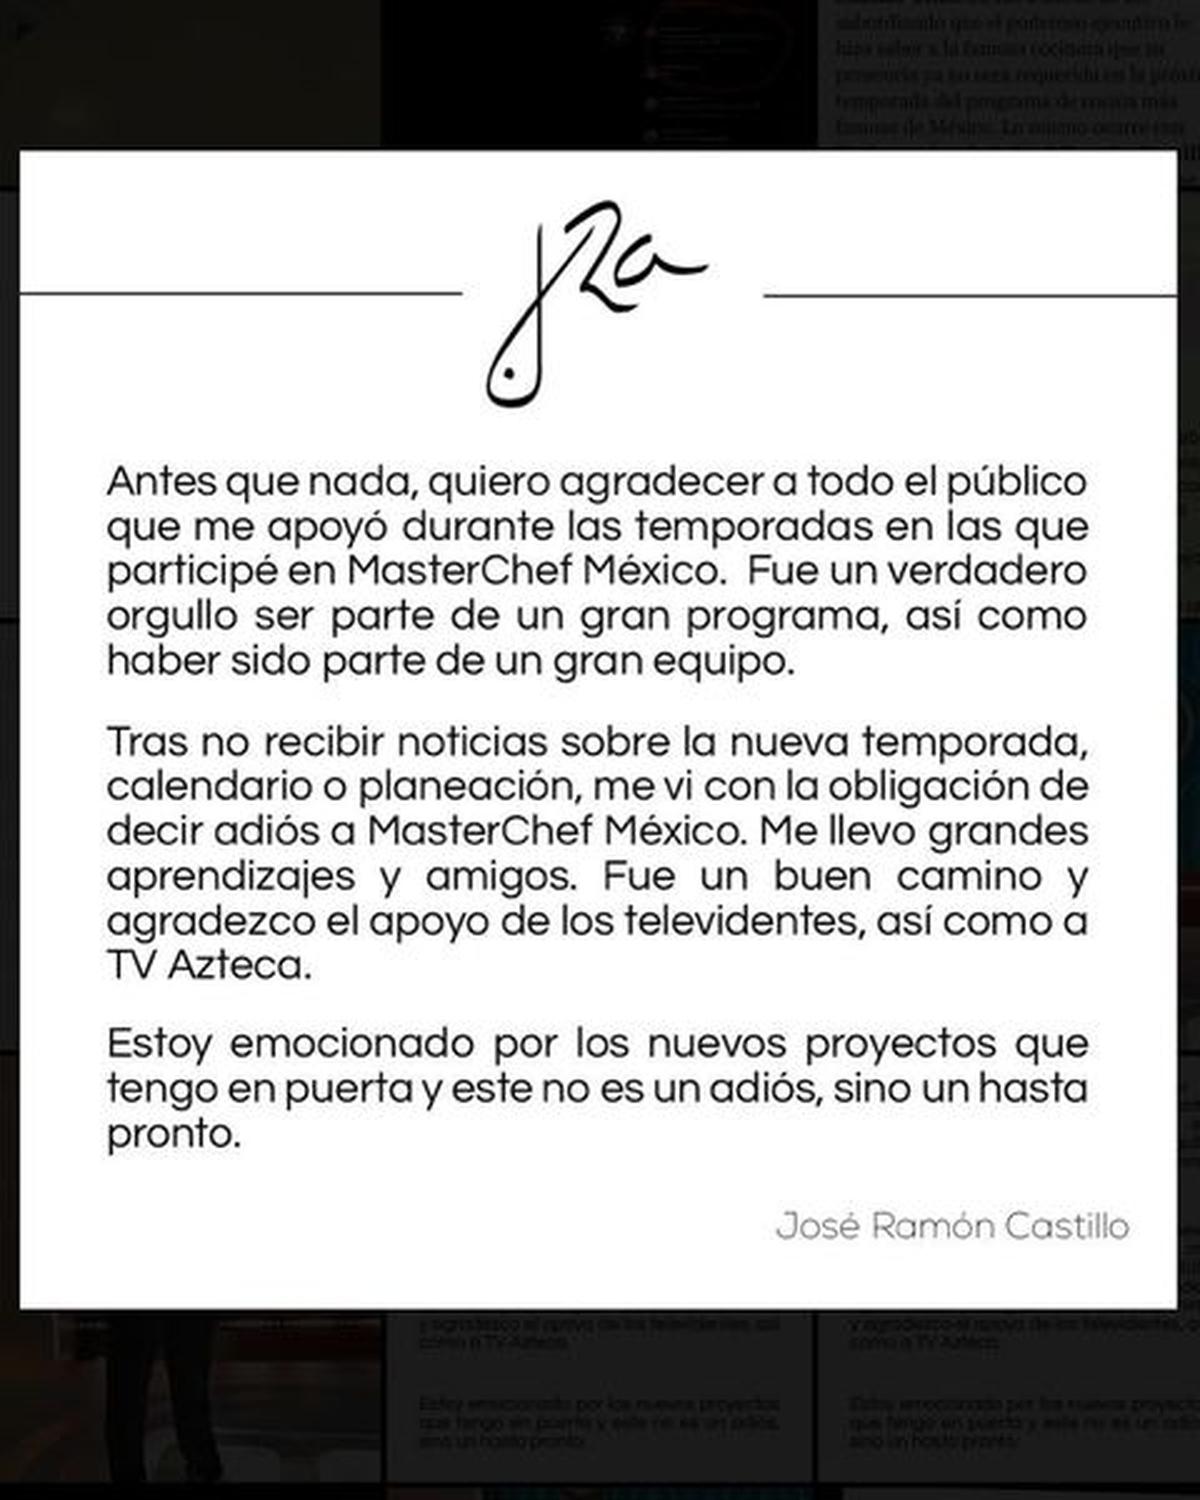  | José Ramón Castillo confirmó su salida de MasterChef con un comunicado.